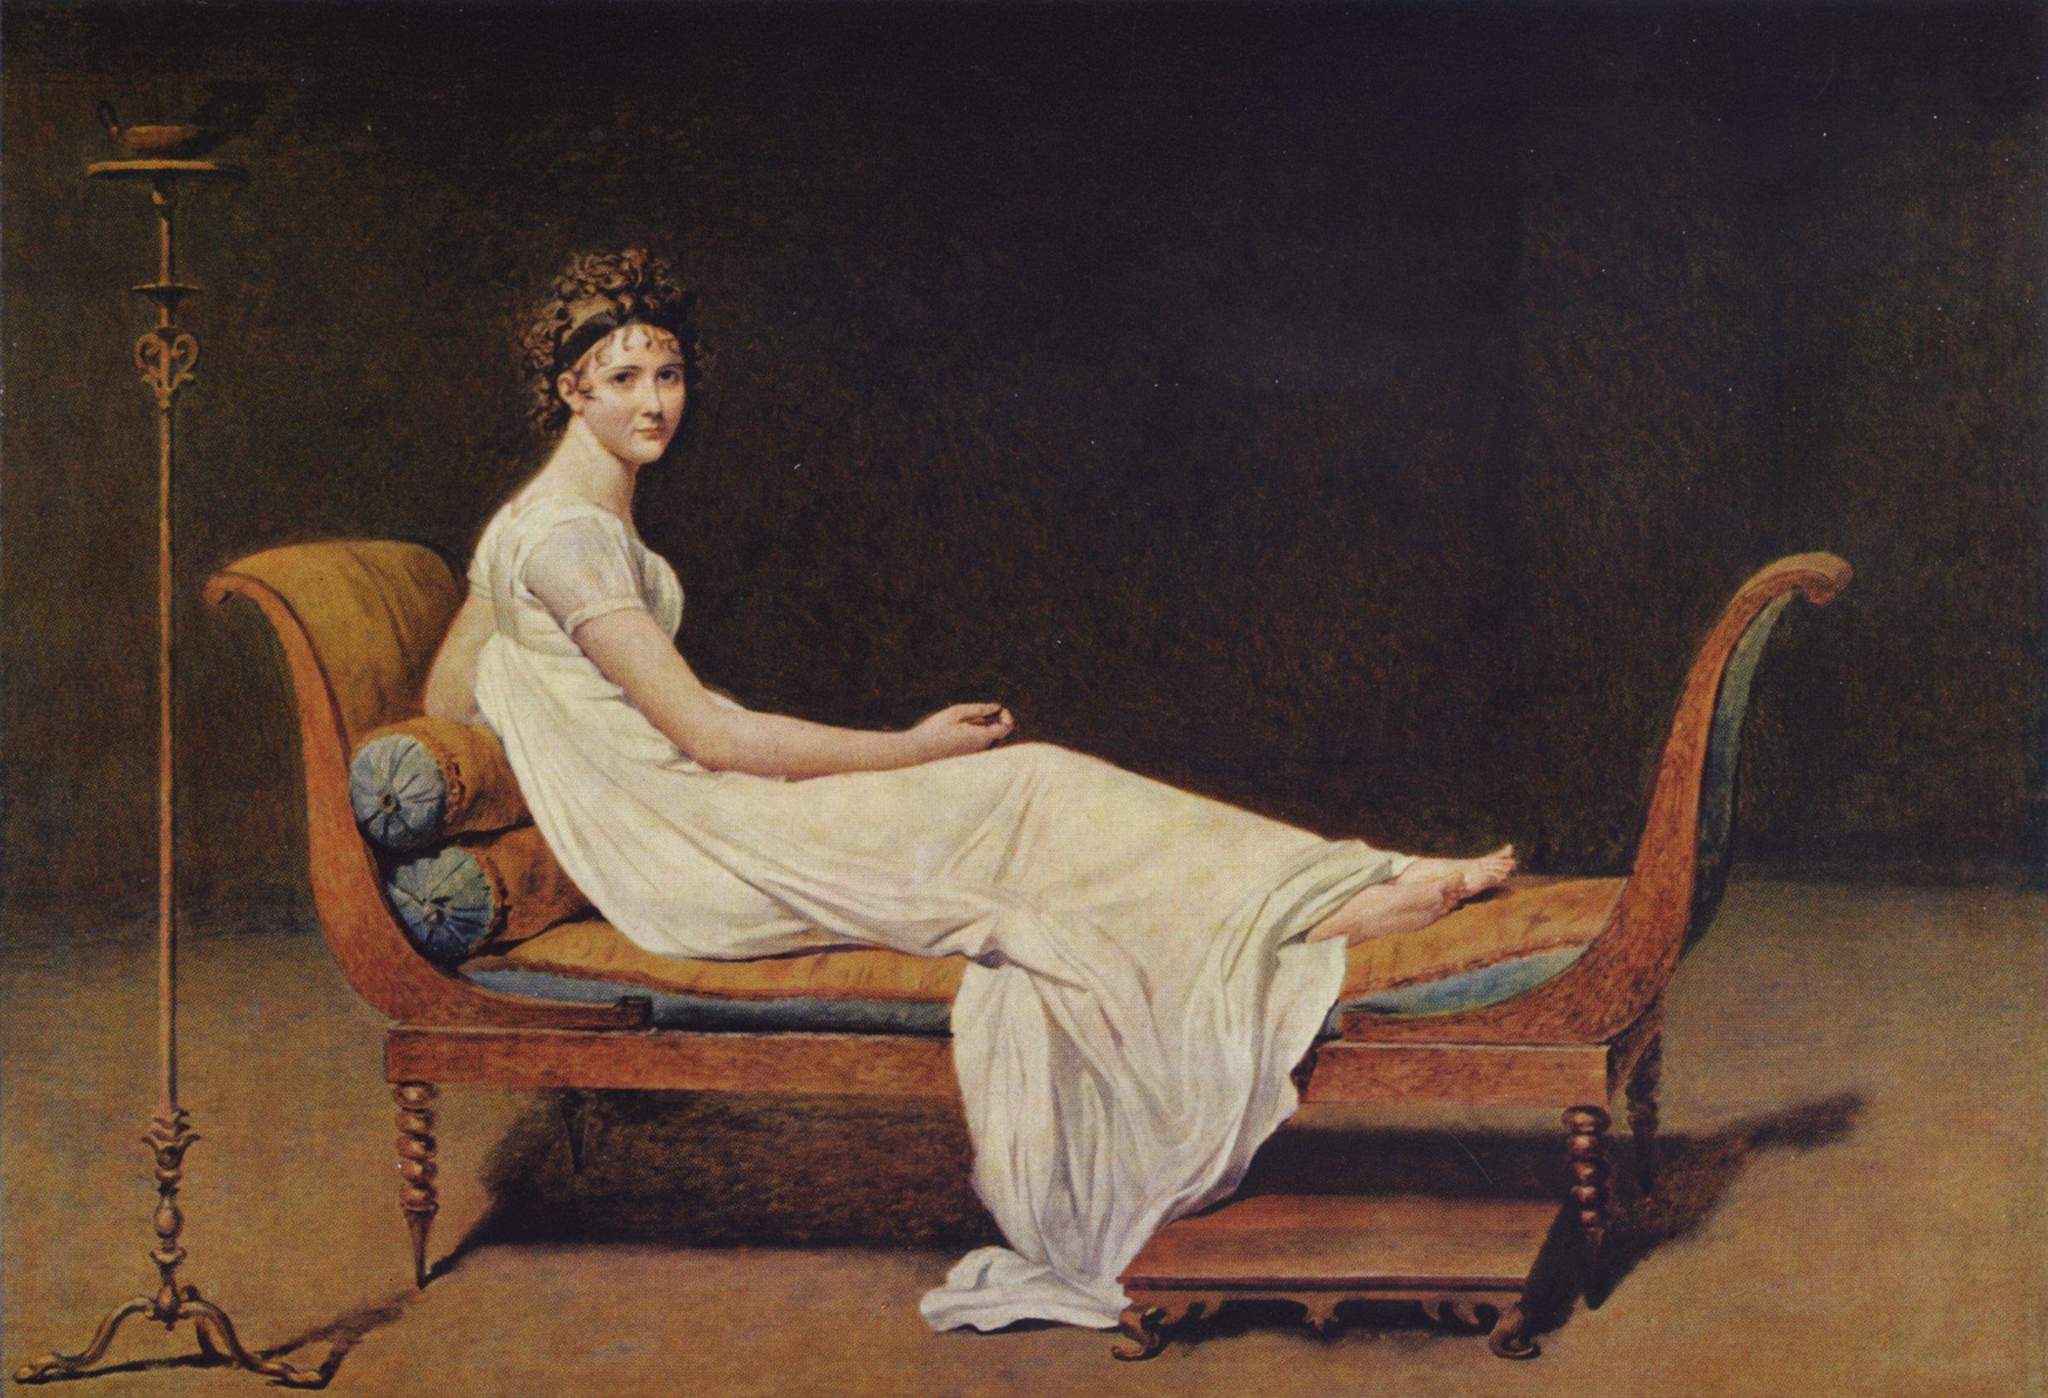 The original Portrait of Madame Récamier by Jacques-Louis David